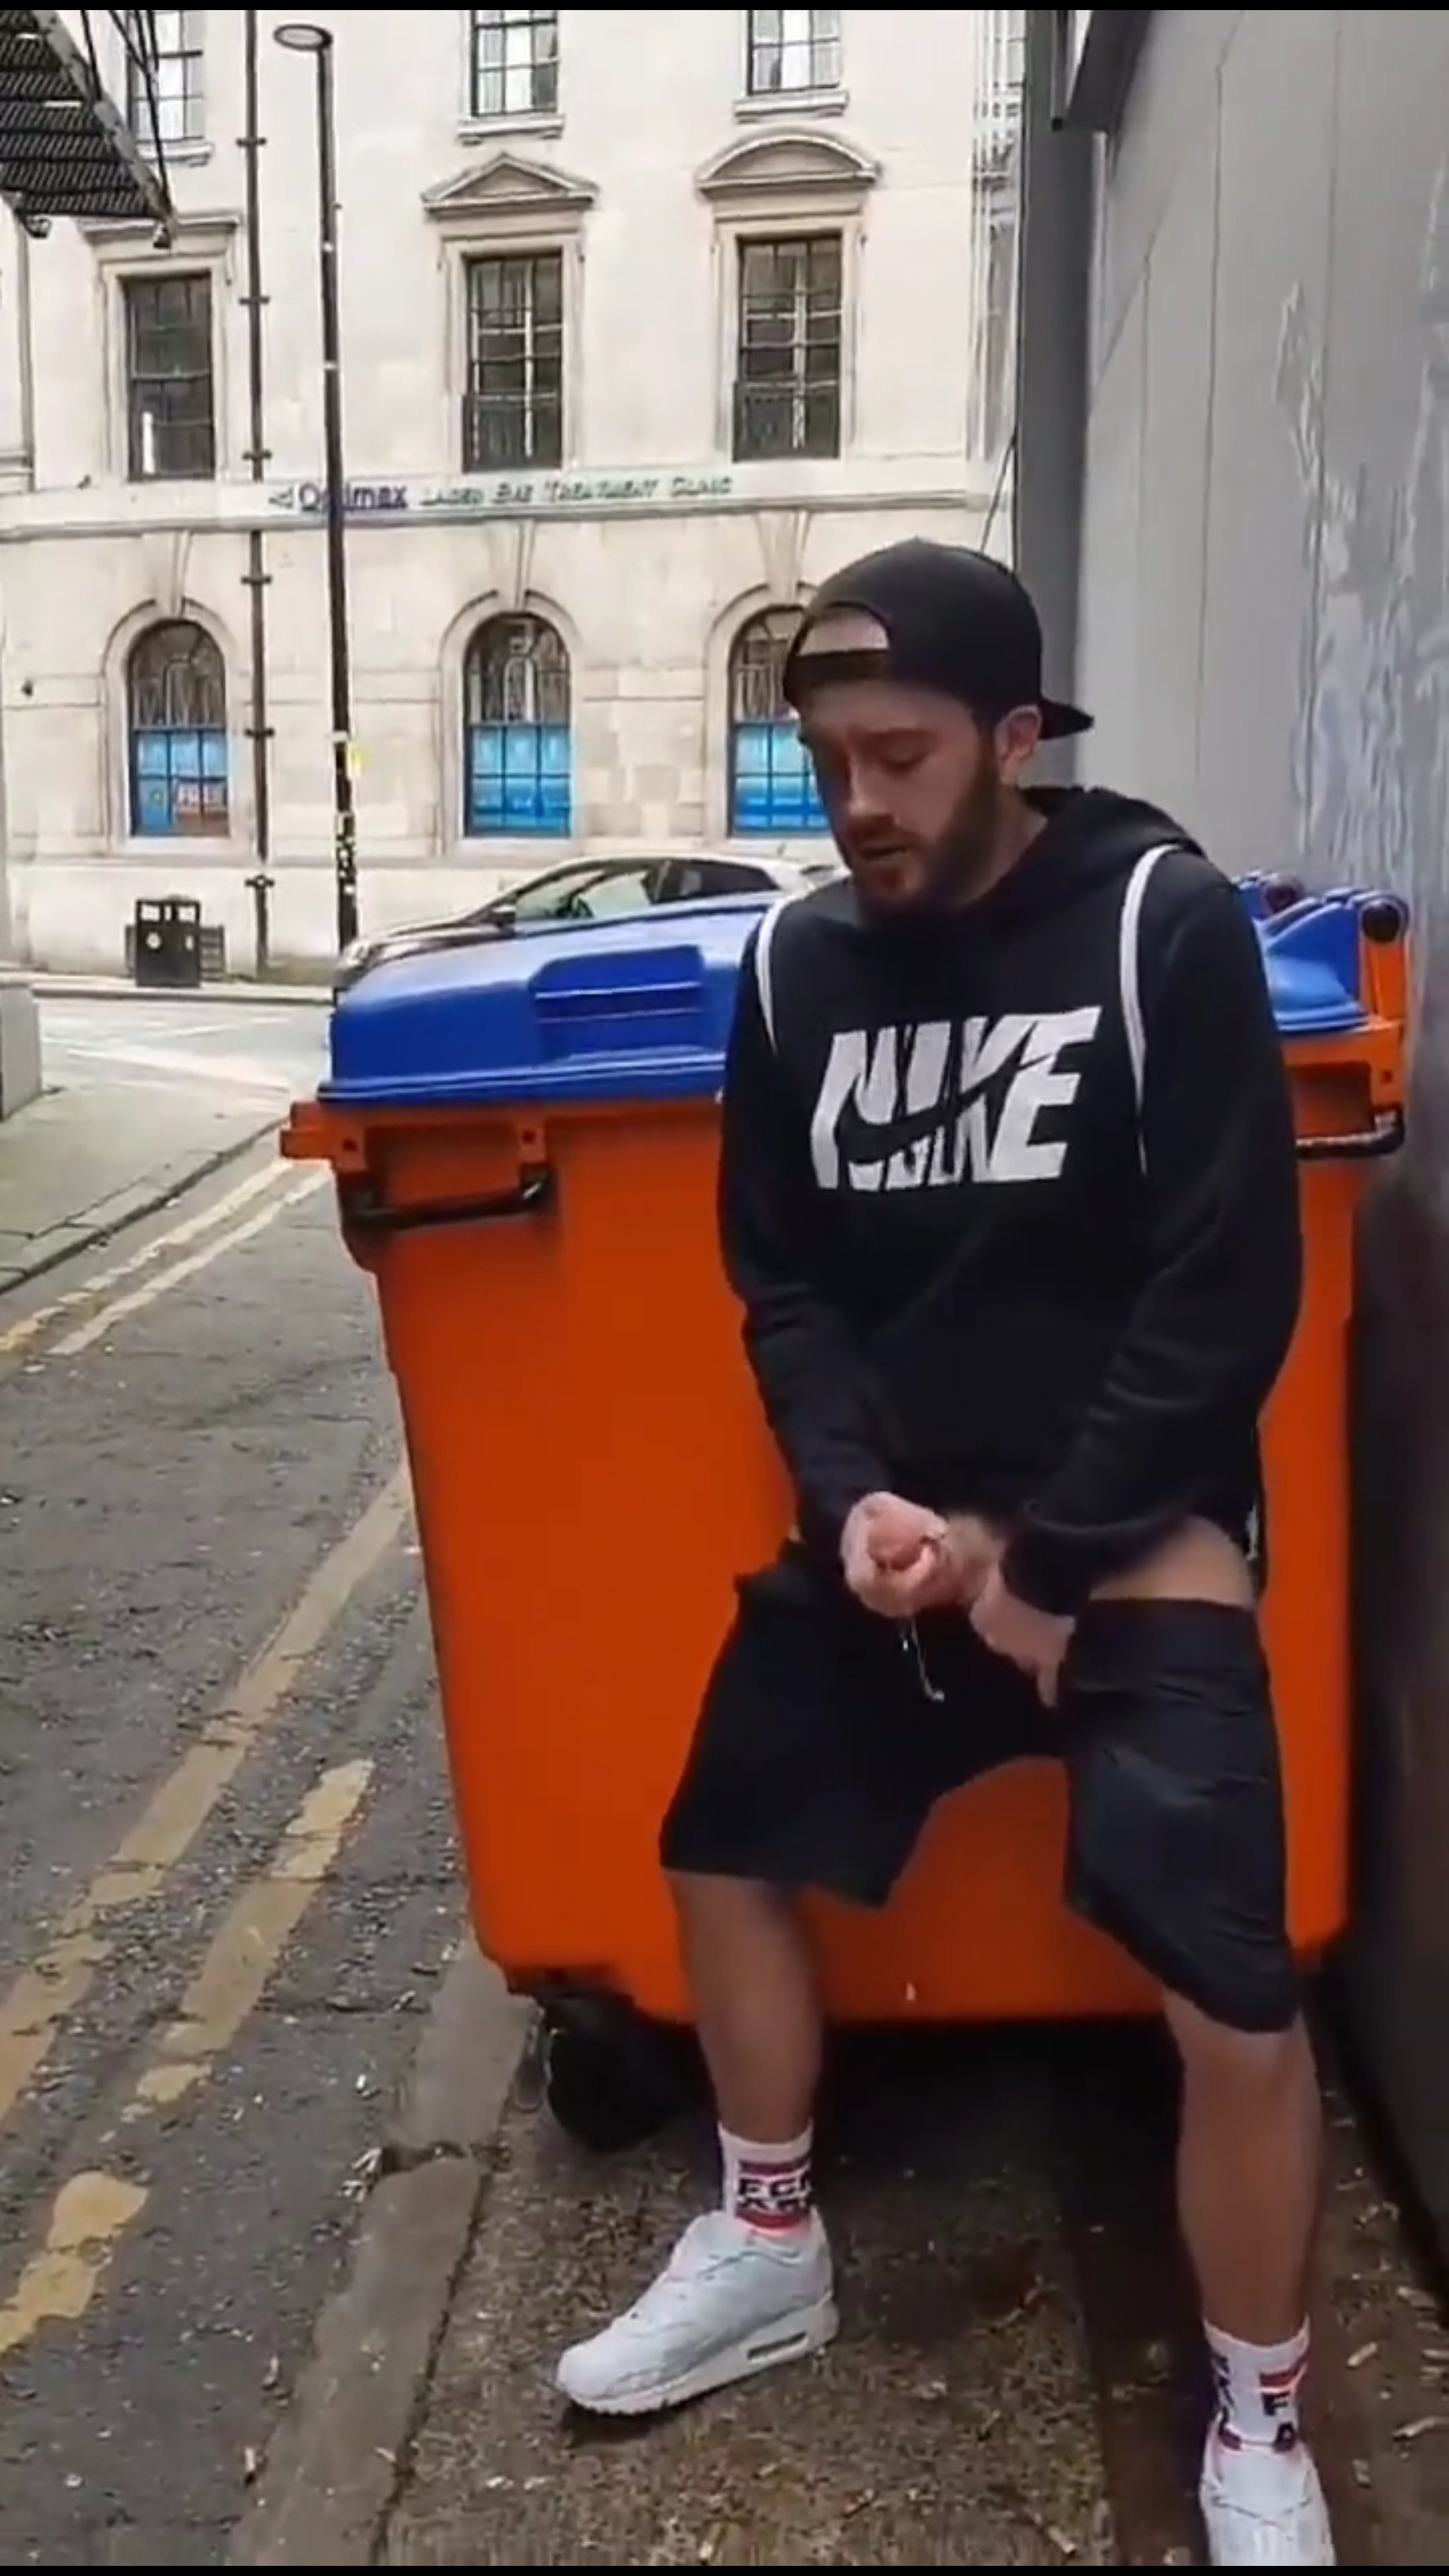 Wanking by a bin